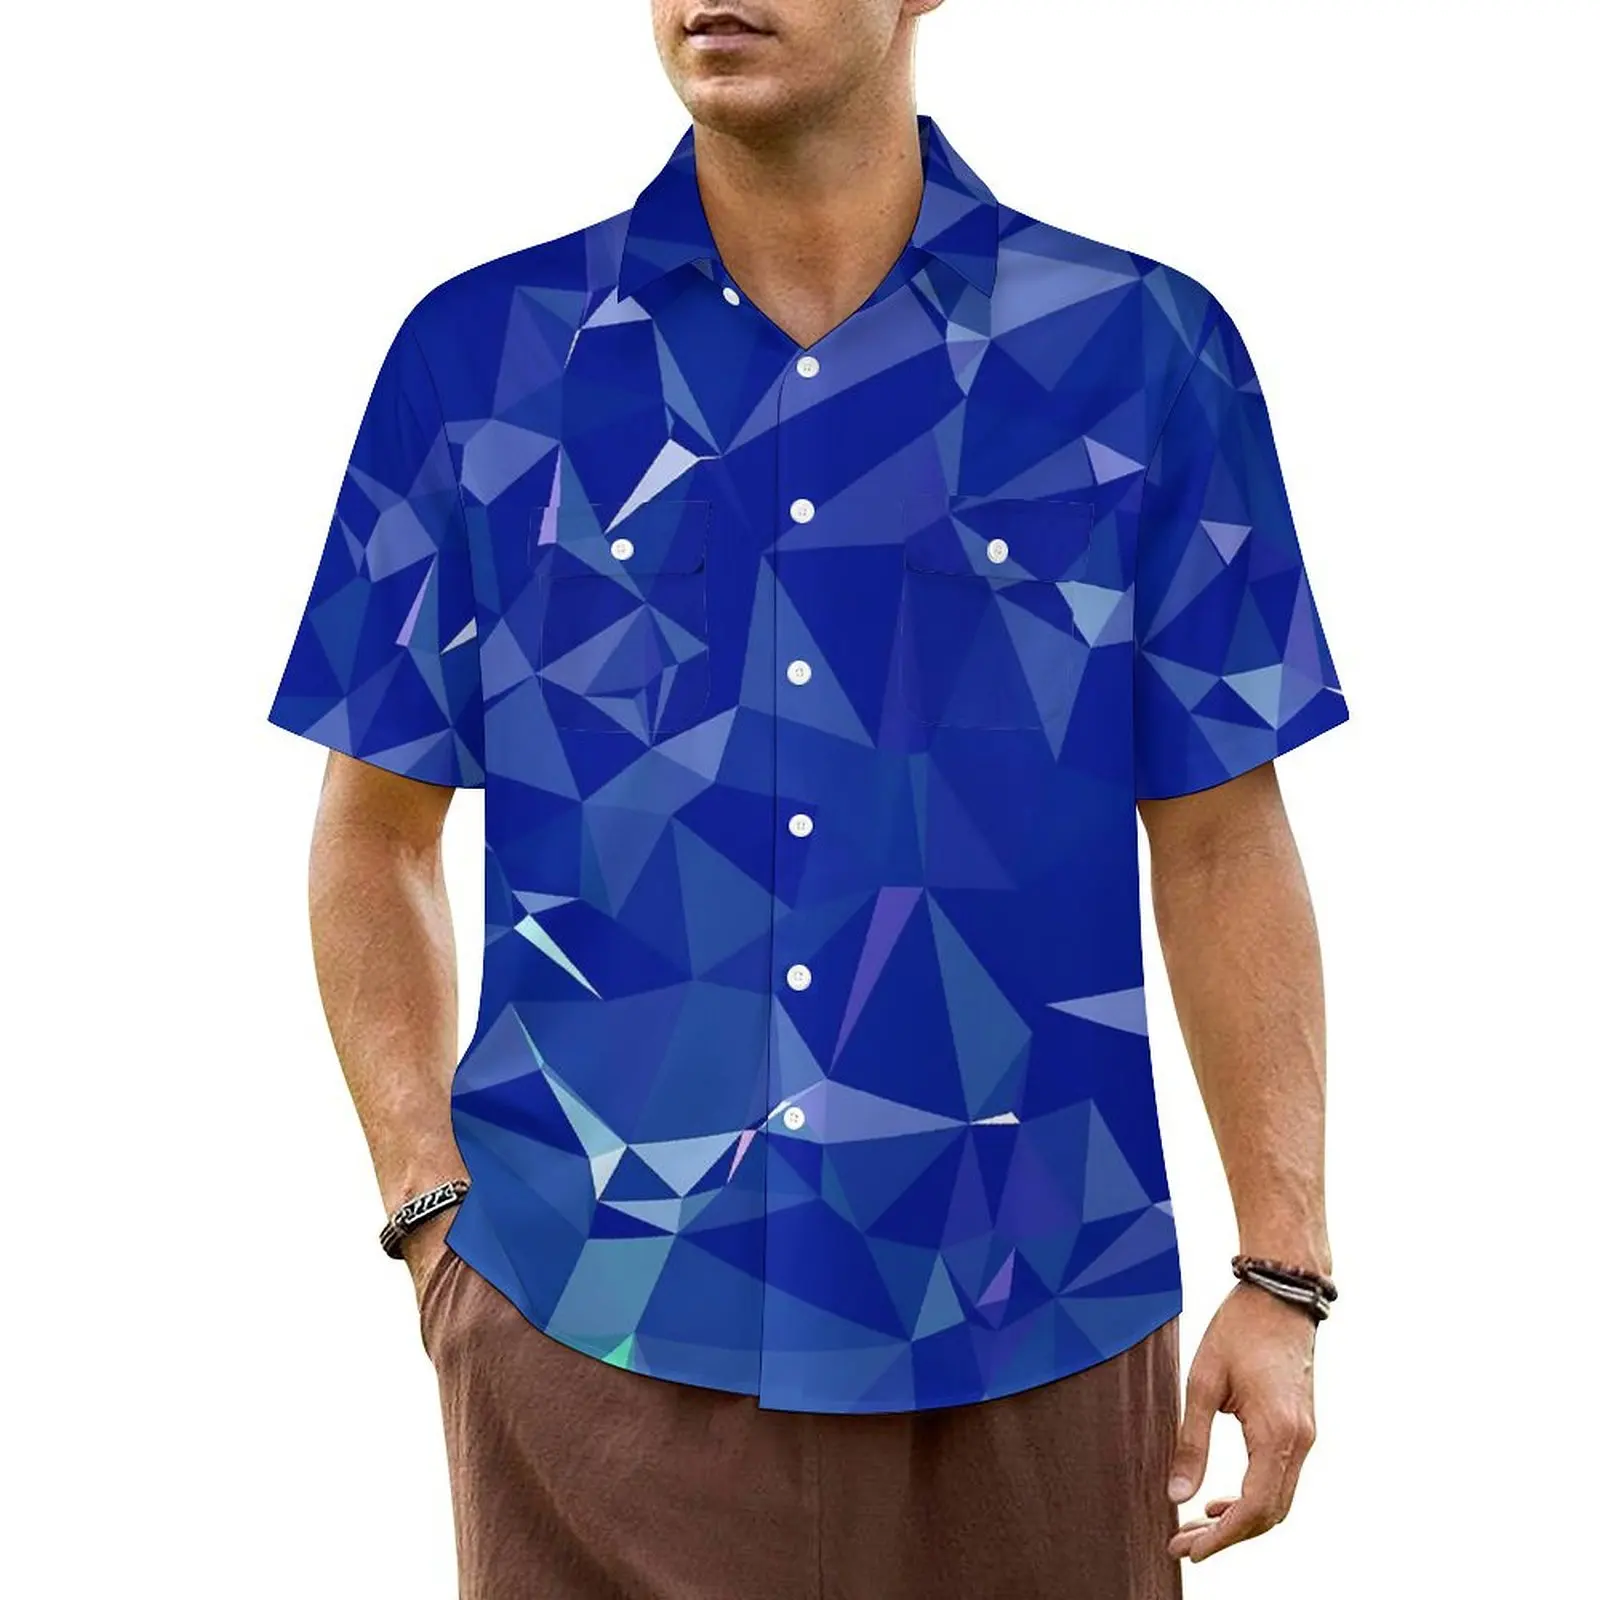 

Рубашка мужская оверсайз с геометрическим принтом, элегантная пляжная блузка с гавайским принтом в современном стиле, повседневная с коротким рукавом, с графическим принтом